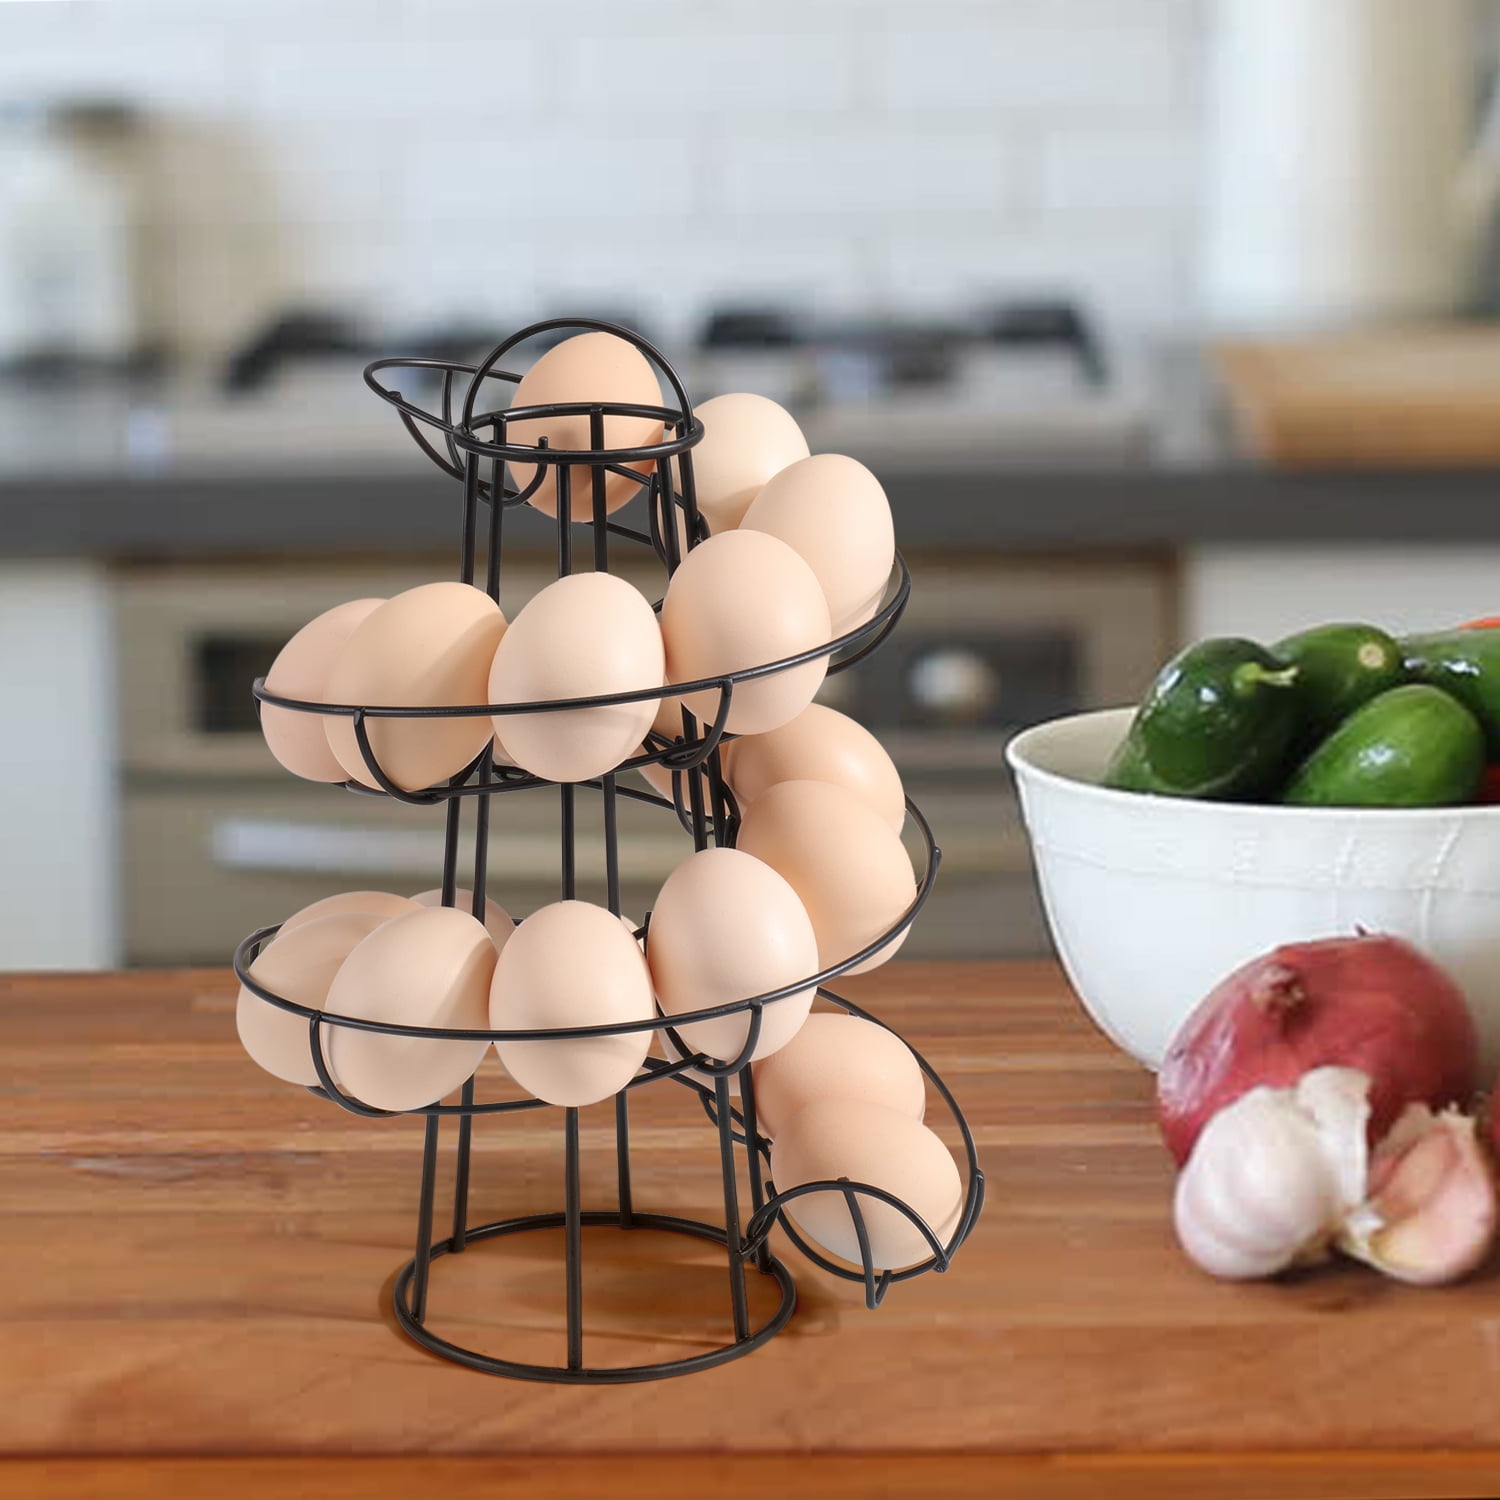 Spiral Design Egg Skelter Chicken Metal Wire Rack Holder Baskets Egg  Steamer Rustic Gathering